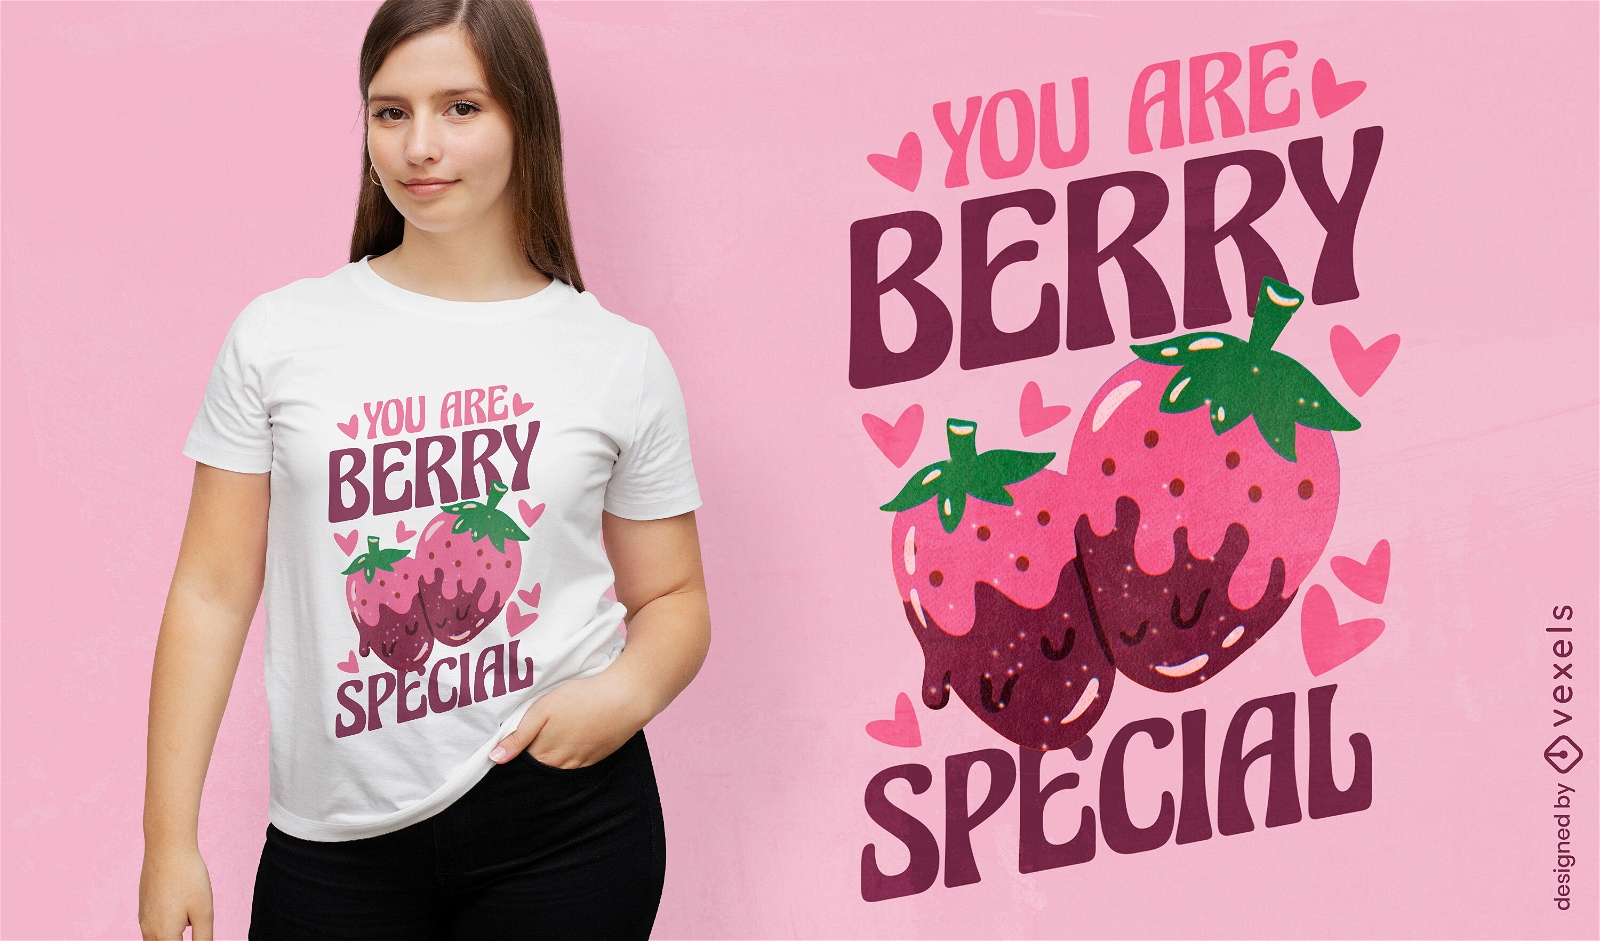 Berry special t-shirt design